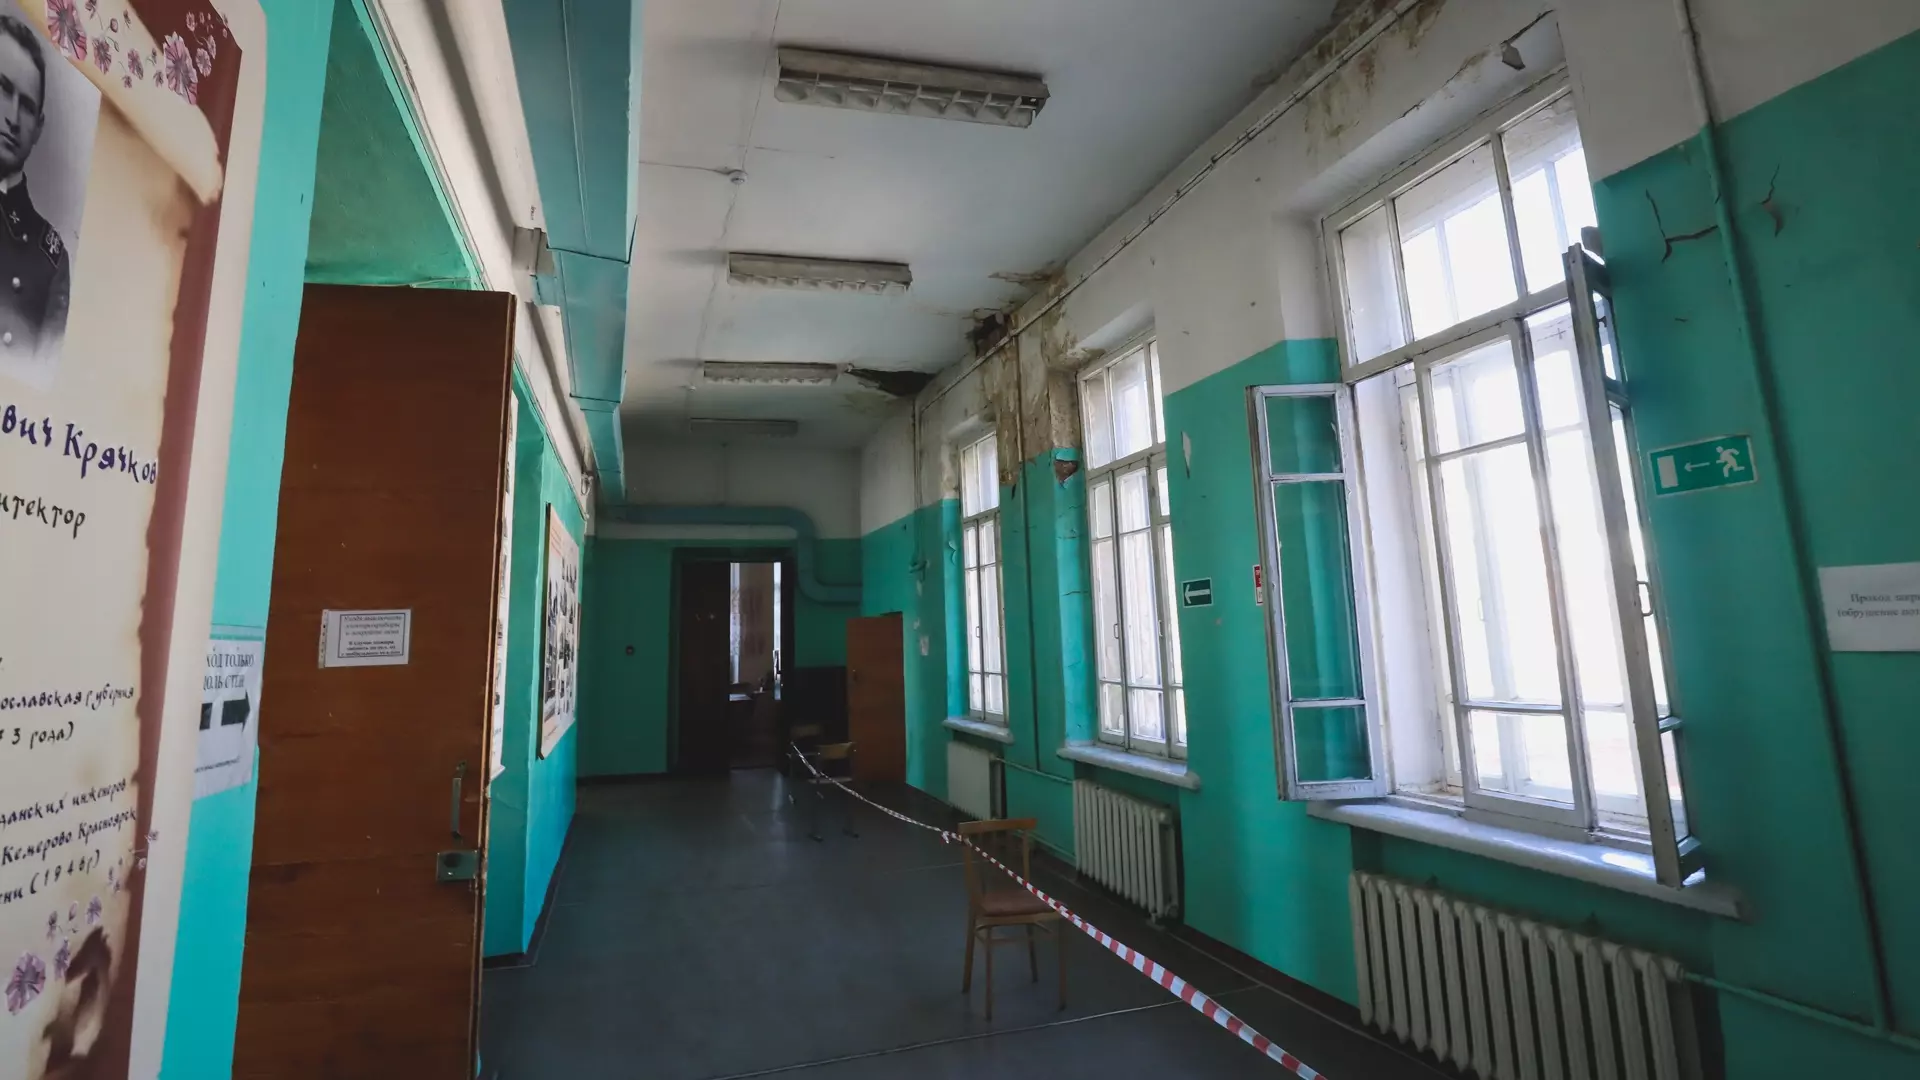 Сообщение о минировании поступило в школу в Нижнем Новгороде